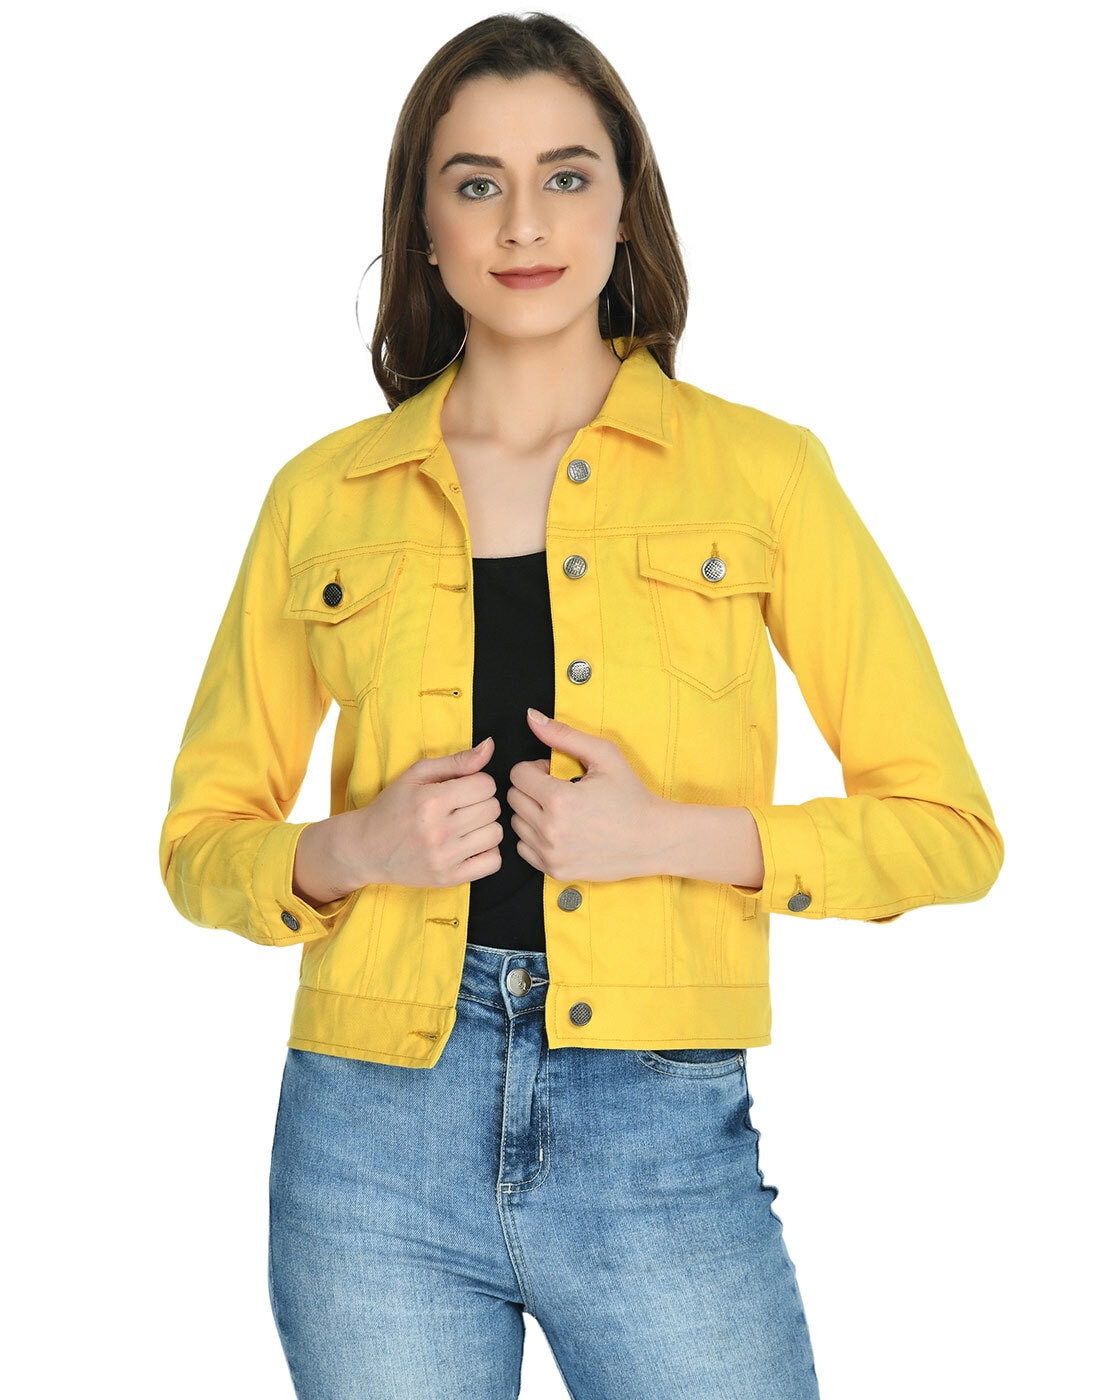 Buy Men's Yellow & Black Color Block Hooded Denim Jacket Online at Bewakoof